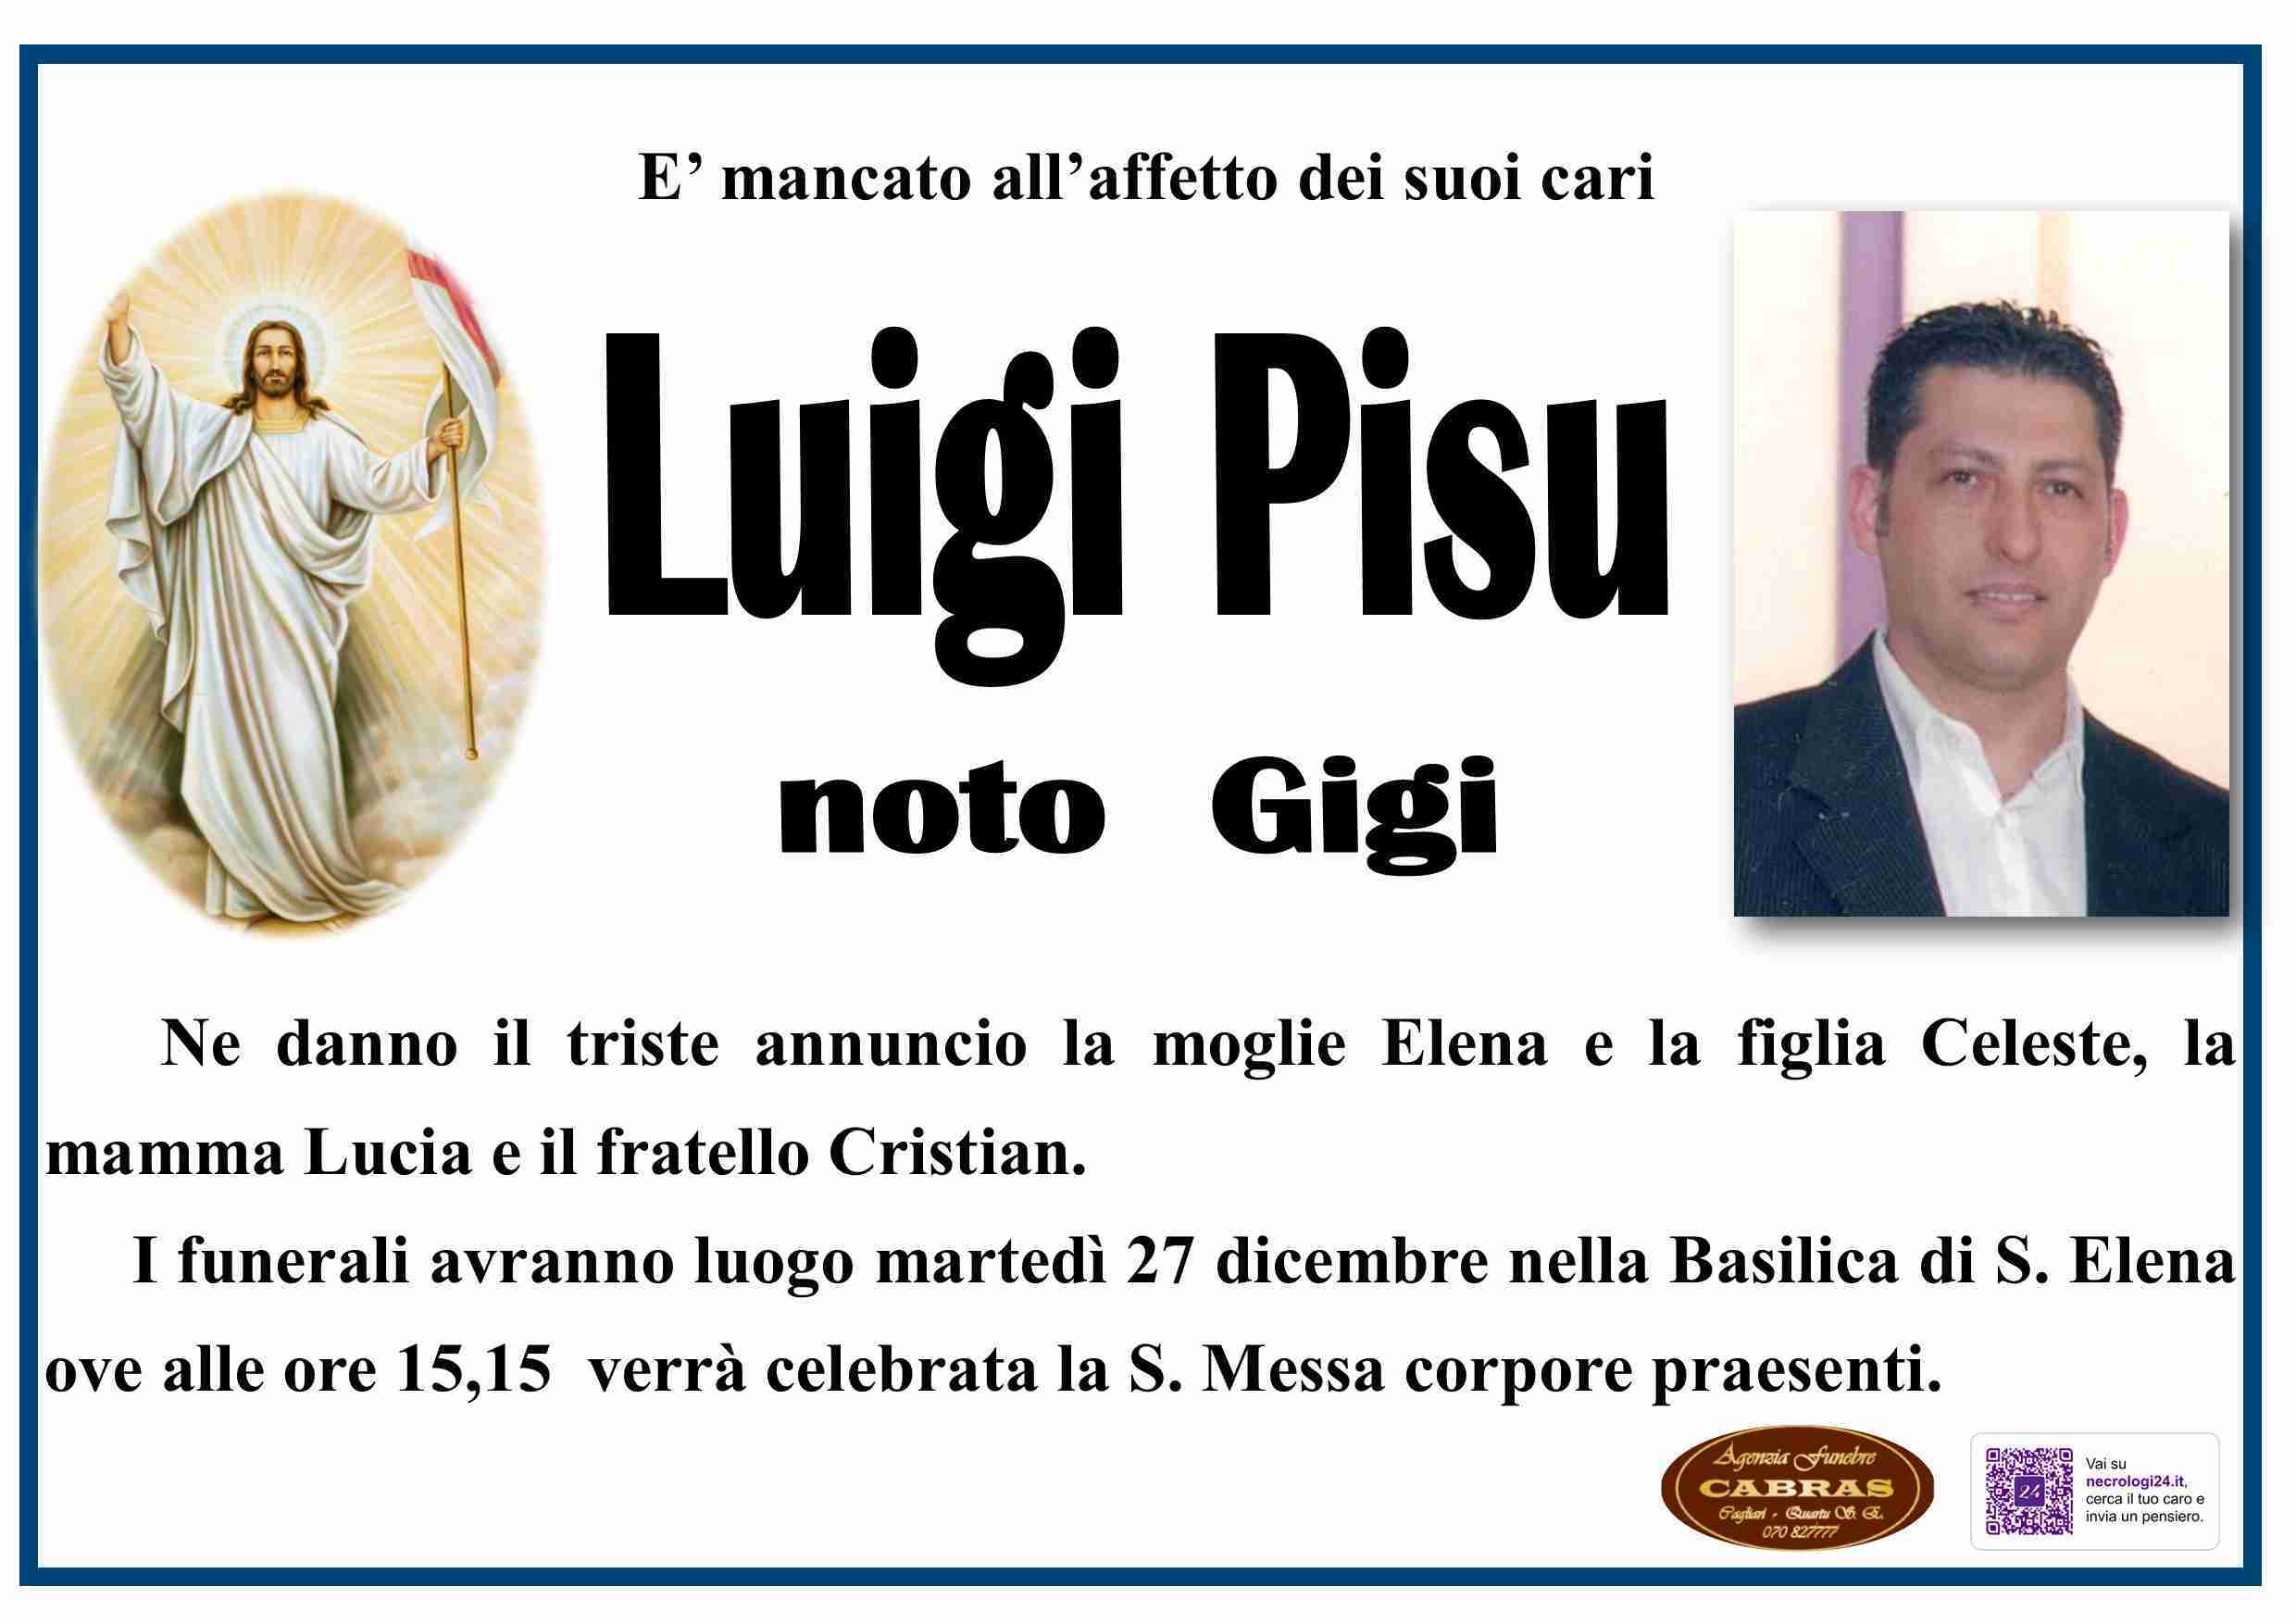 Luigi Pisu